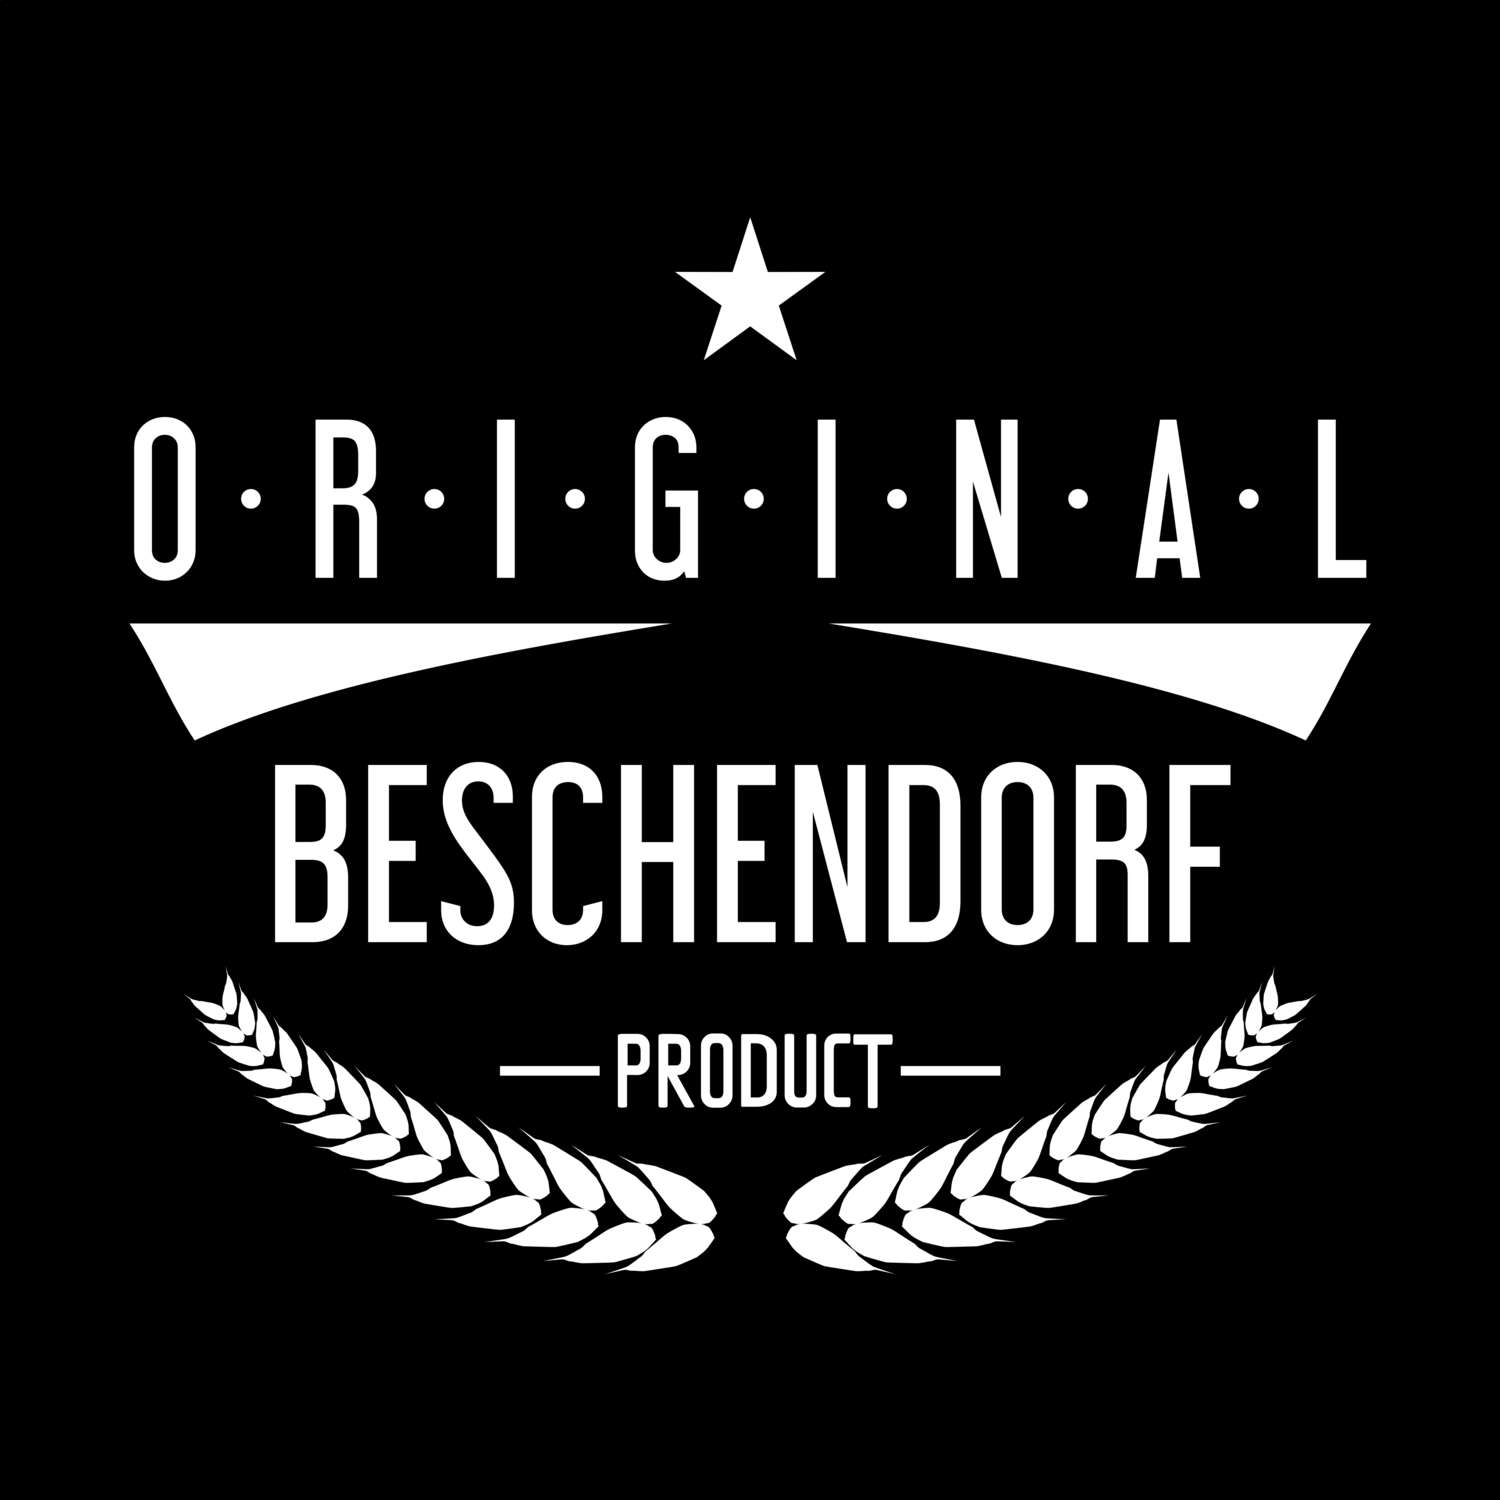 Beschendorf T-Shirt »Original Product«